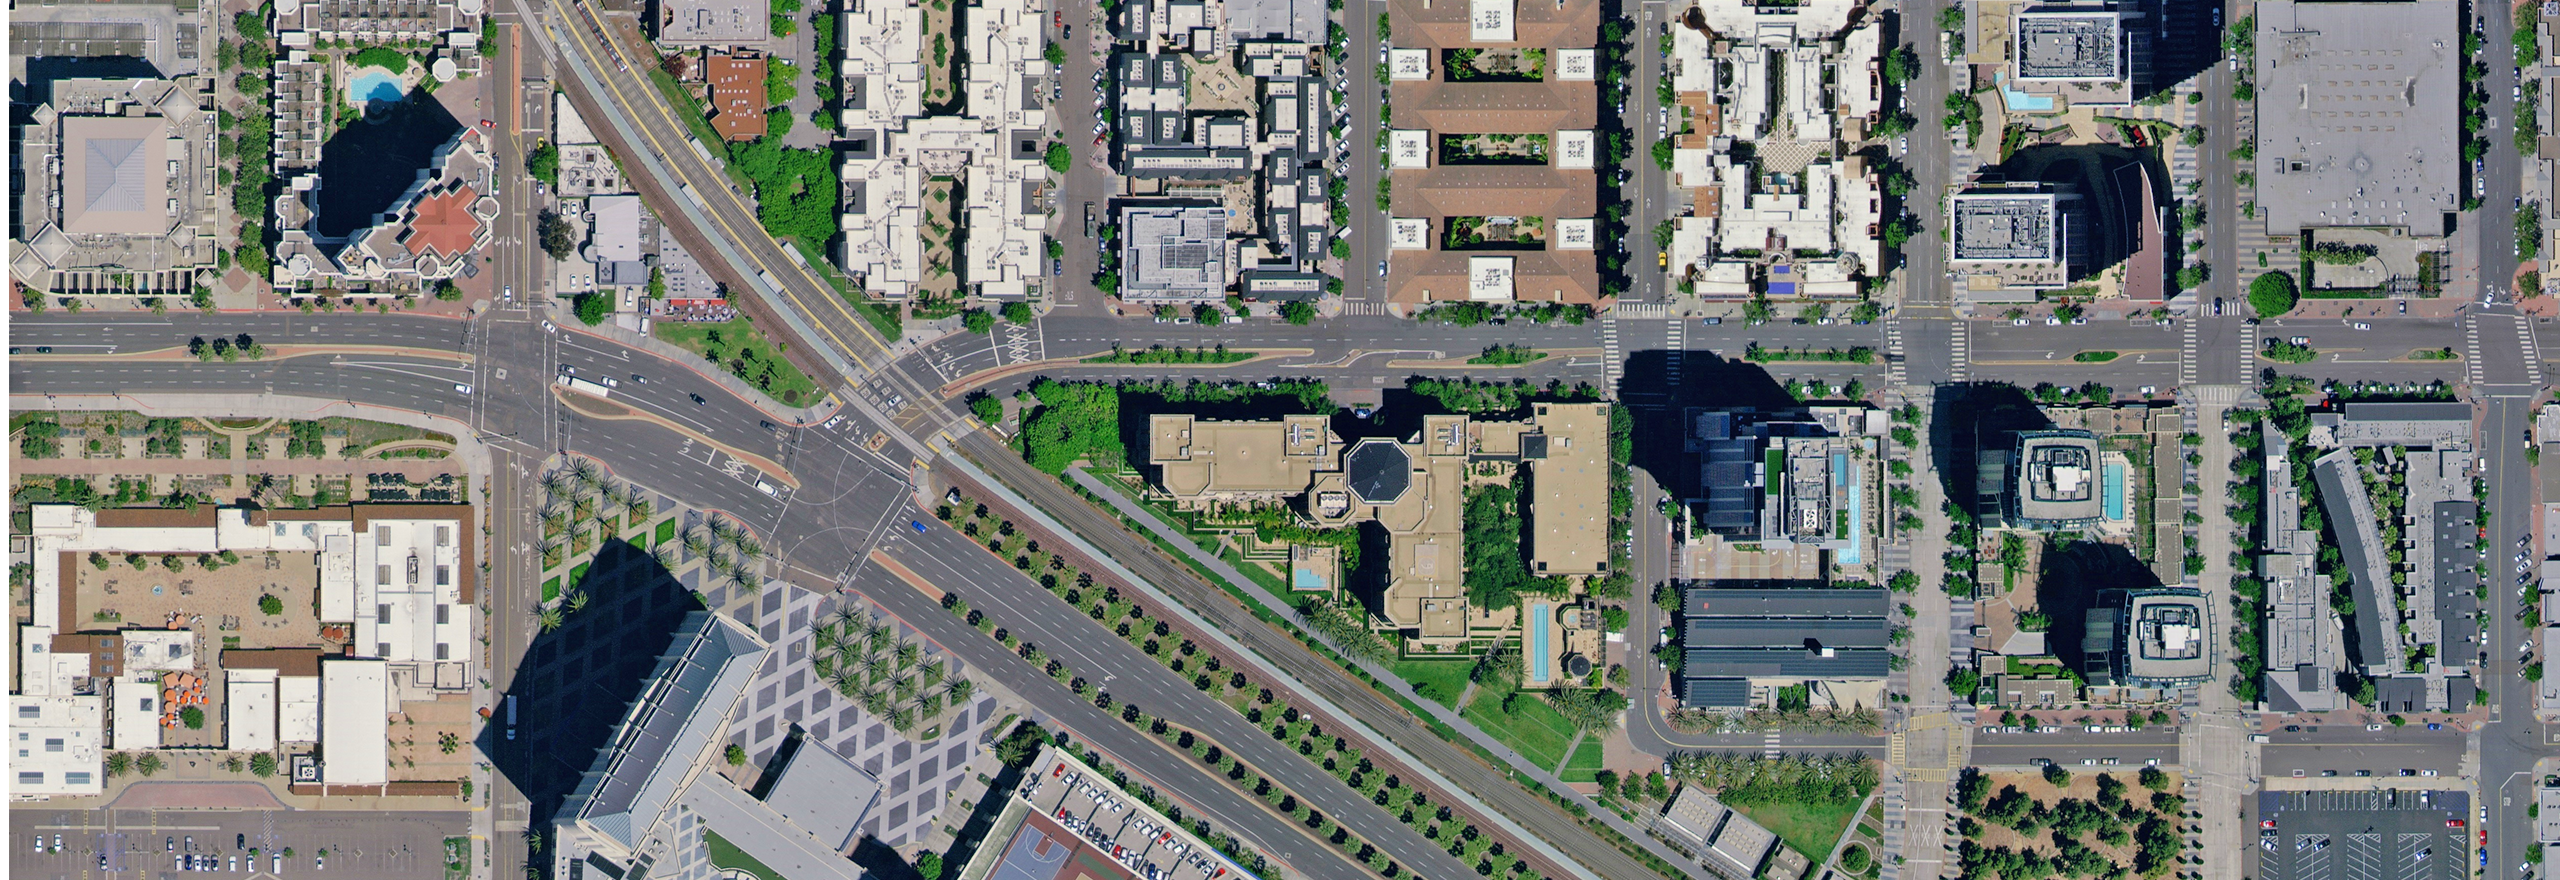 Imagens aéreas de quarteirões urbanos em San Diego